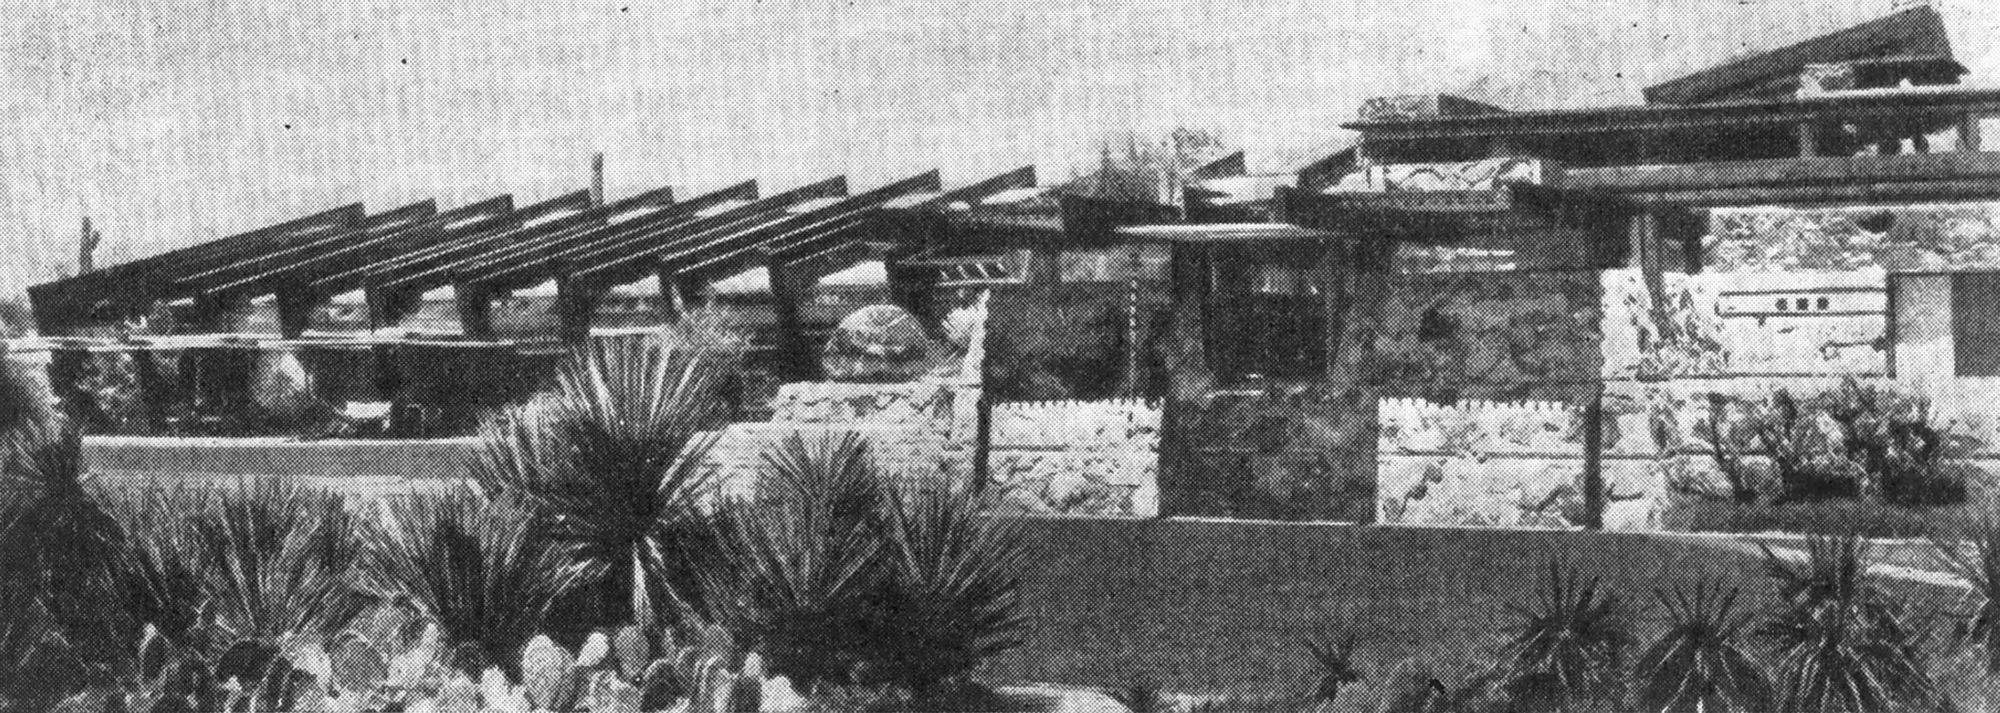 16. Феникс (Аризона). Летняя база Тейлизин, 1938 г. Арх. Ф. Л. Райт